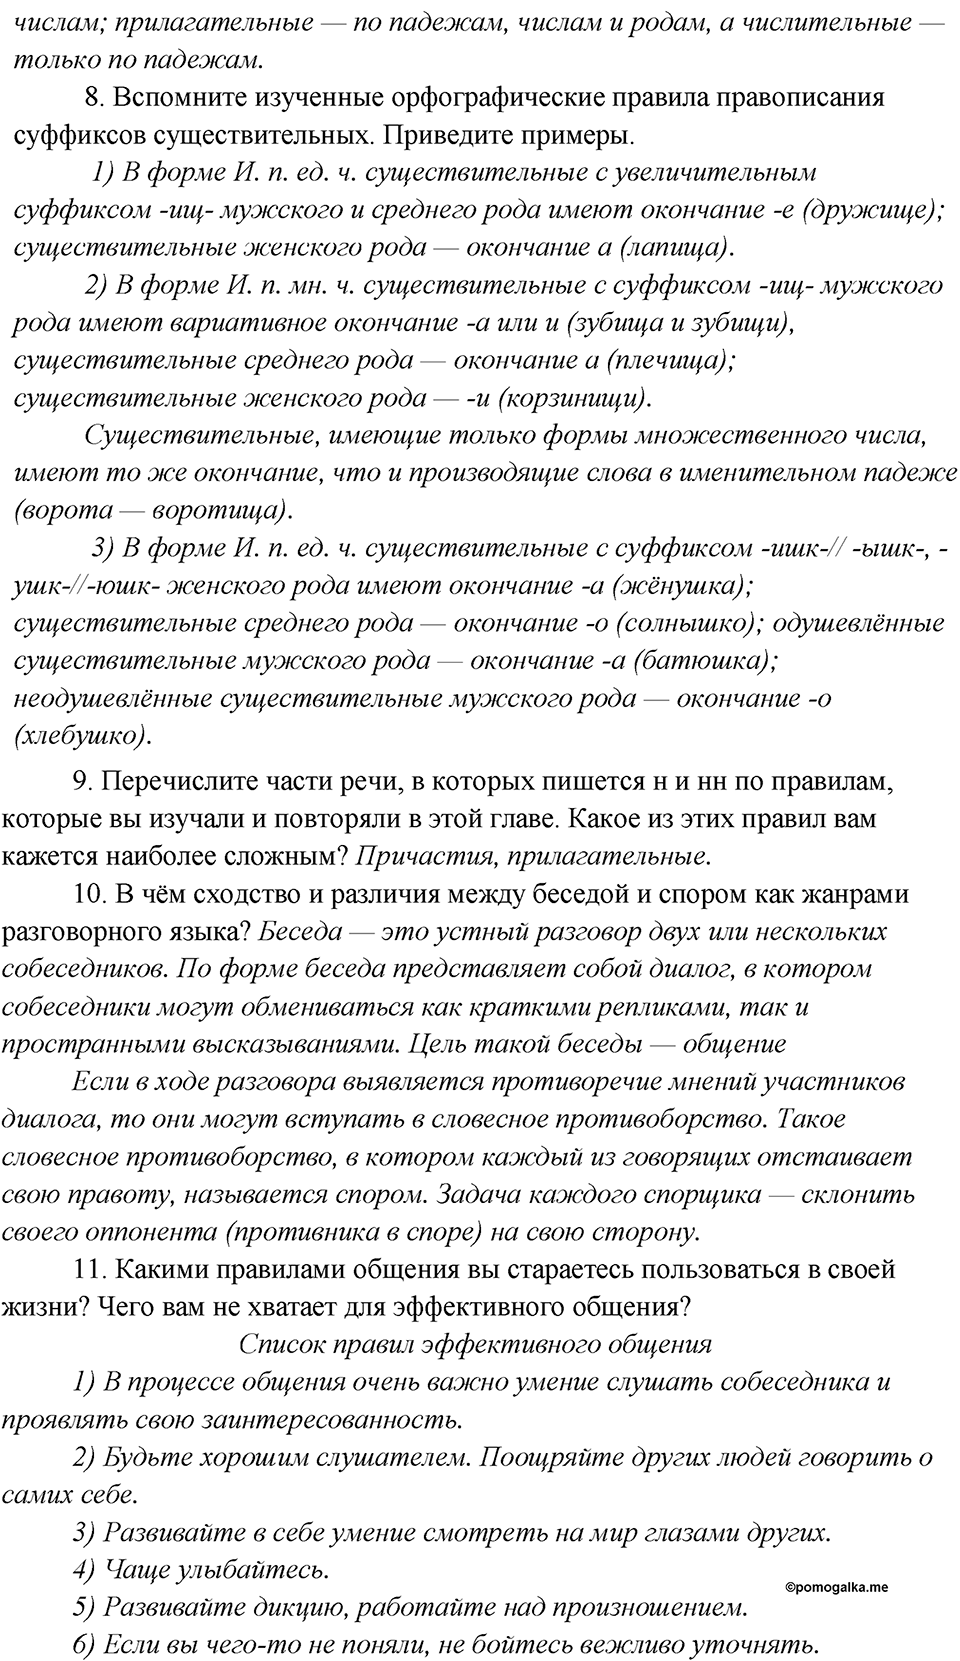 Повторение, Вопросы и задания для самопроверки №6 русский язык 7 класс Шмелев